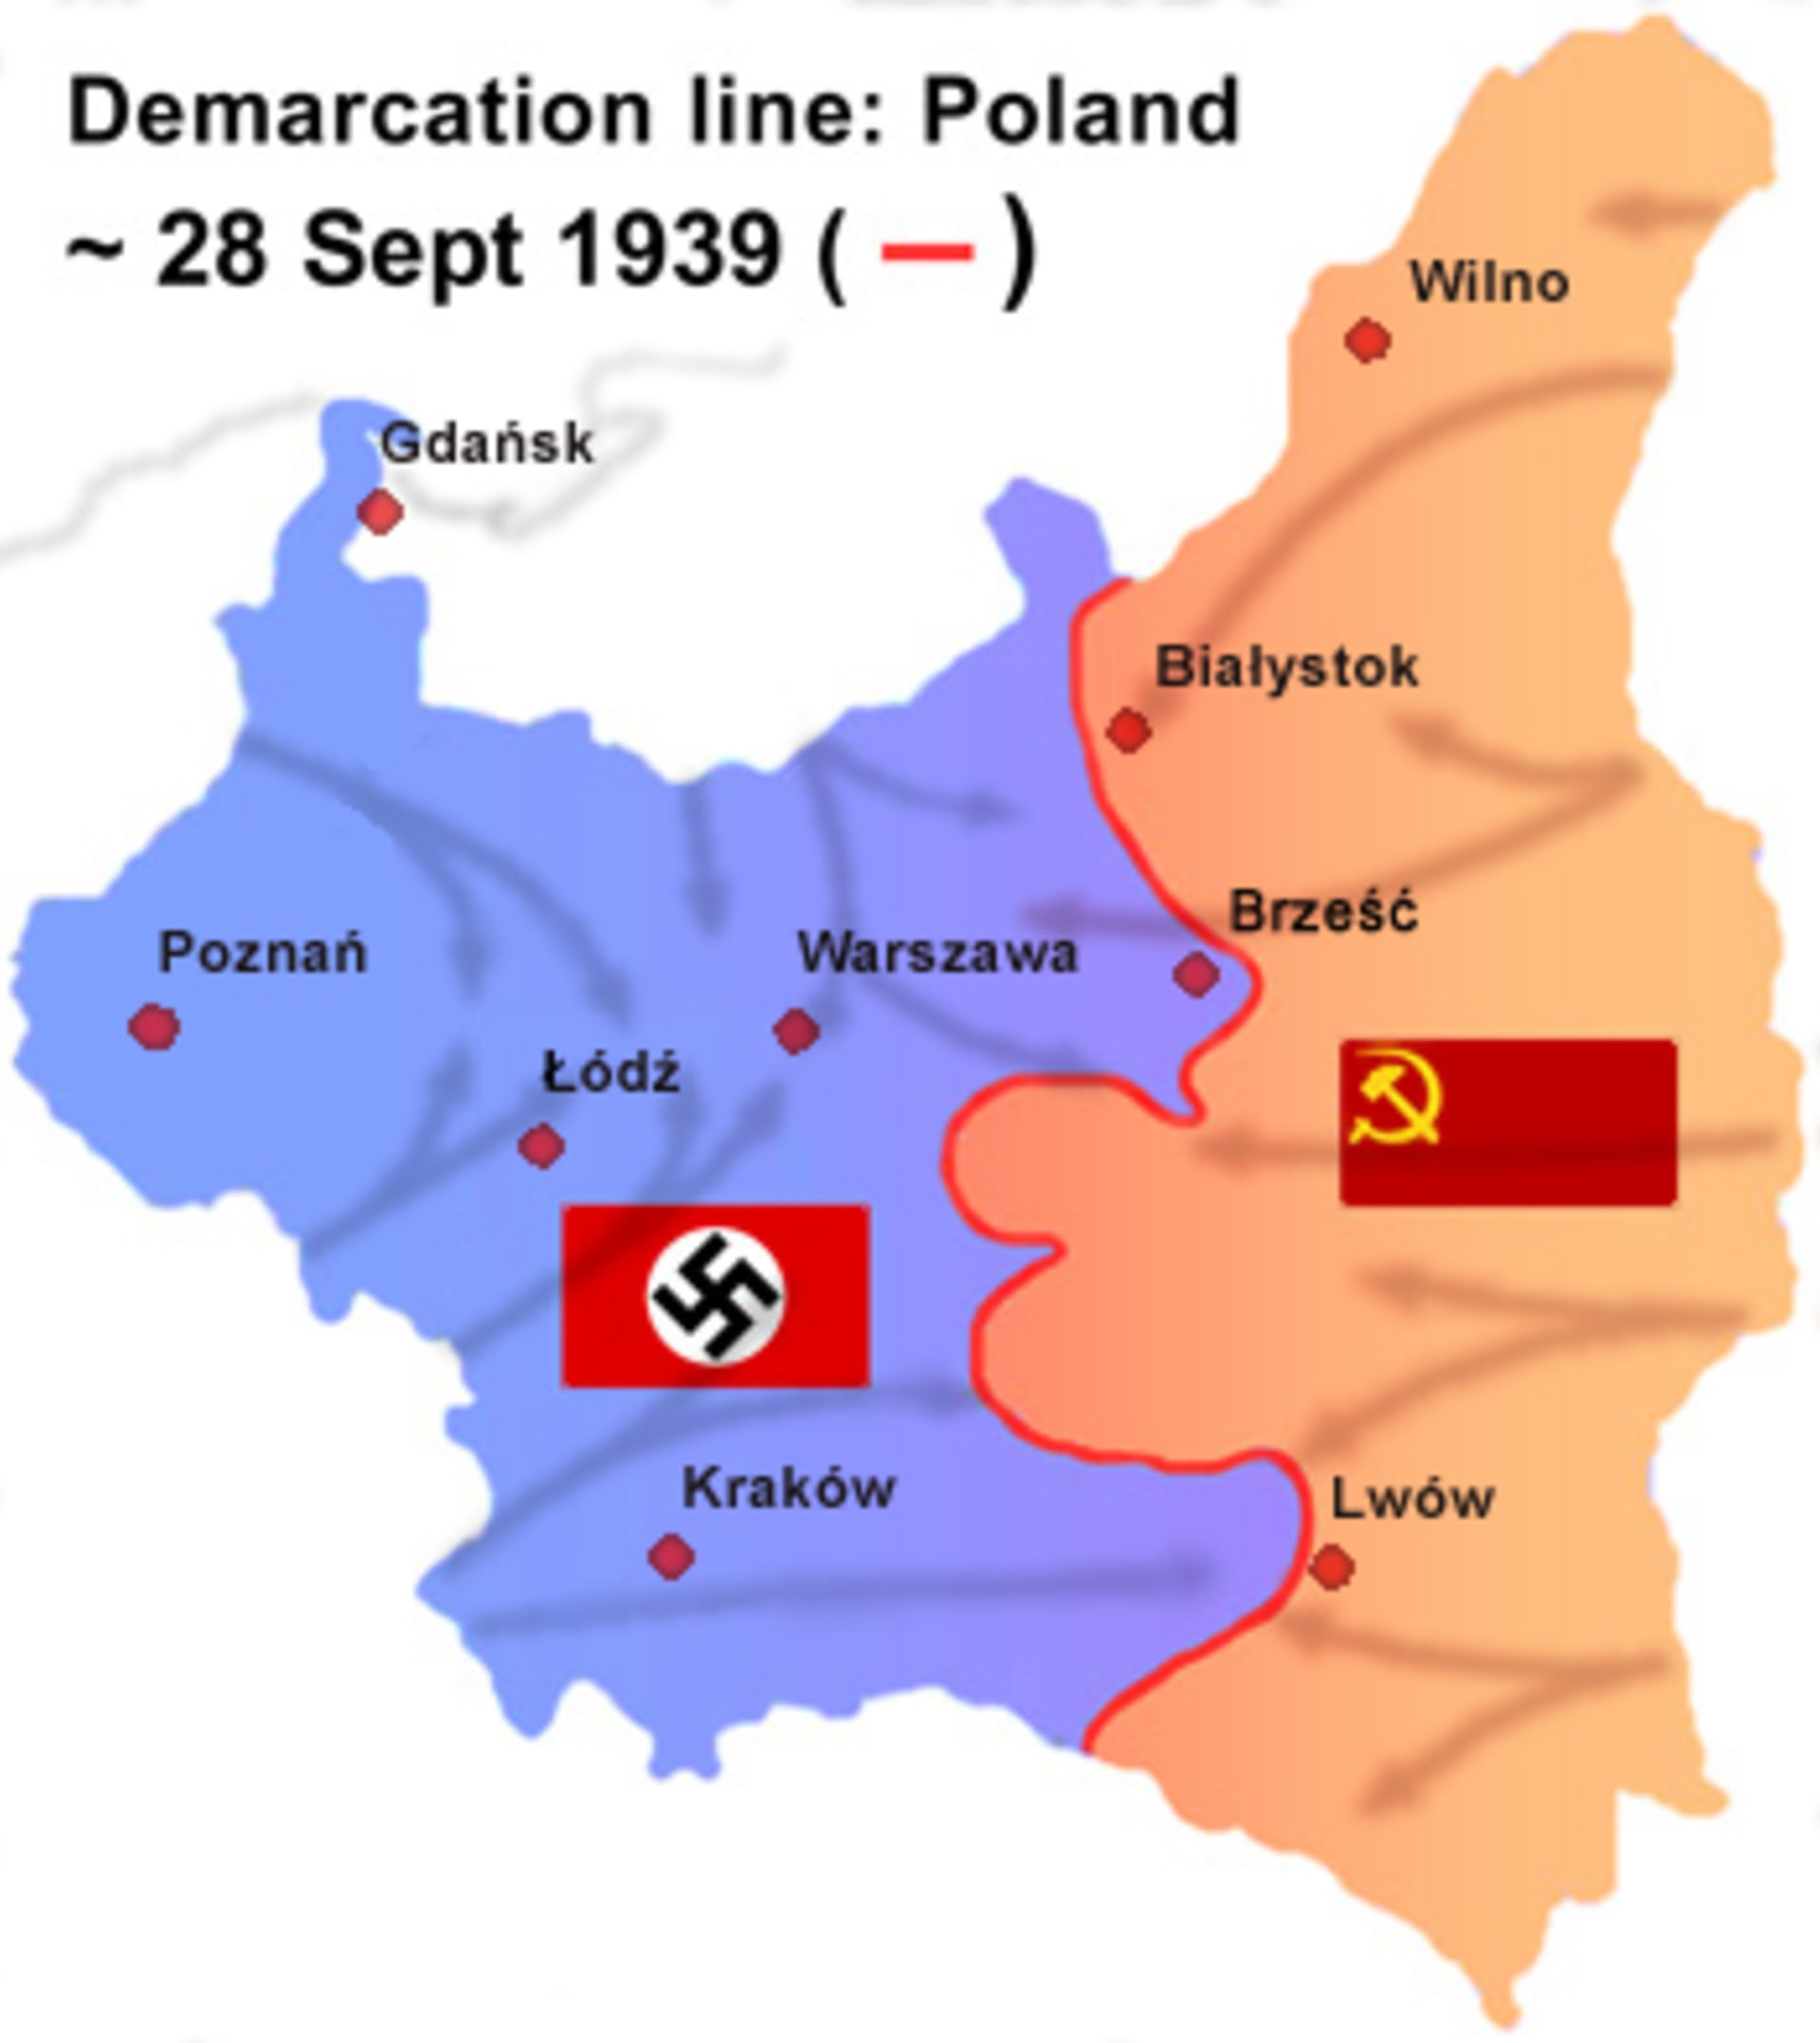 Výsledek německo-sovětské invaze do Polska v roce 1939